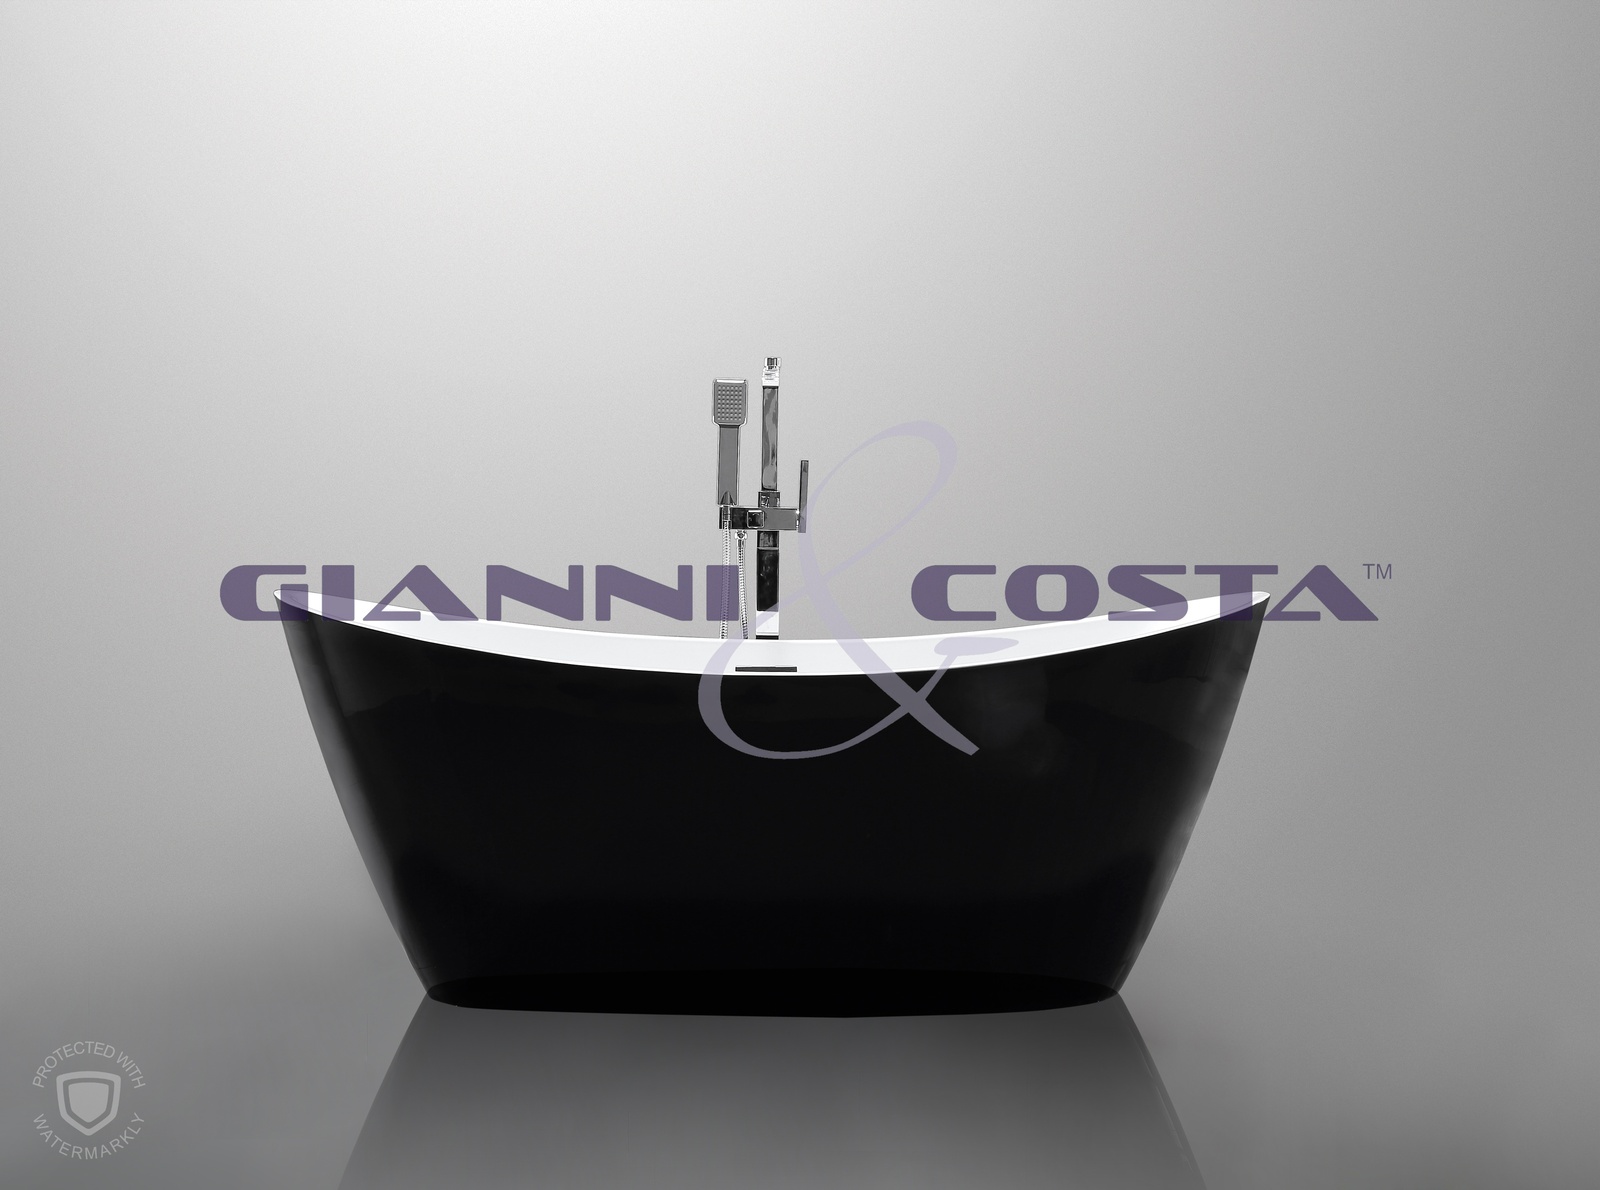 Acrylic Free Standing Bath Tub - Black - Model Aphrodite GC1011B 1600mm